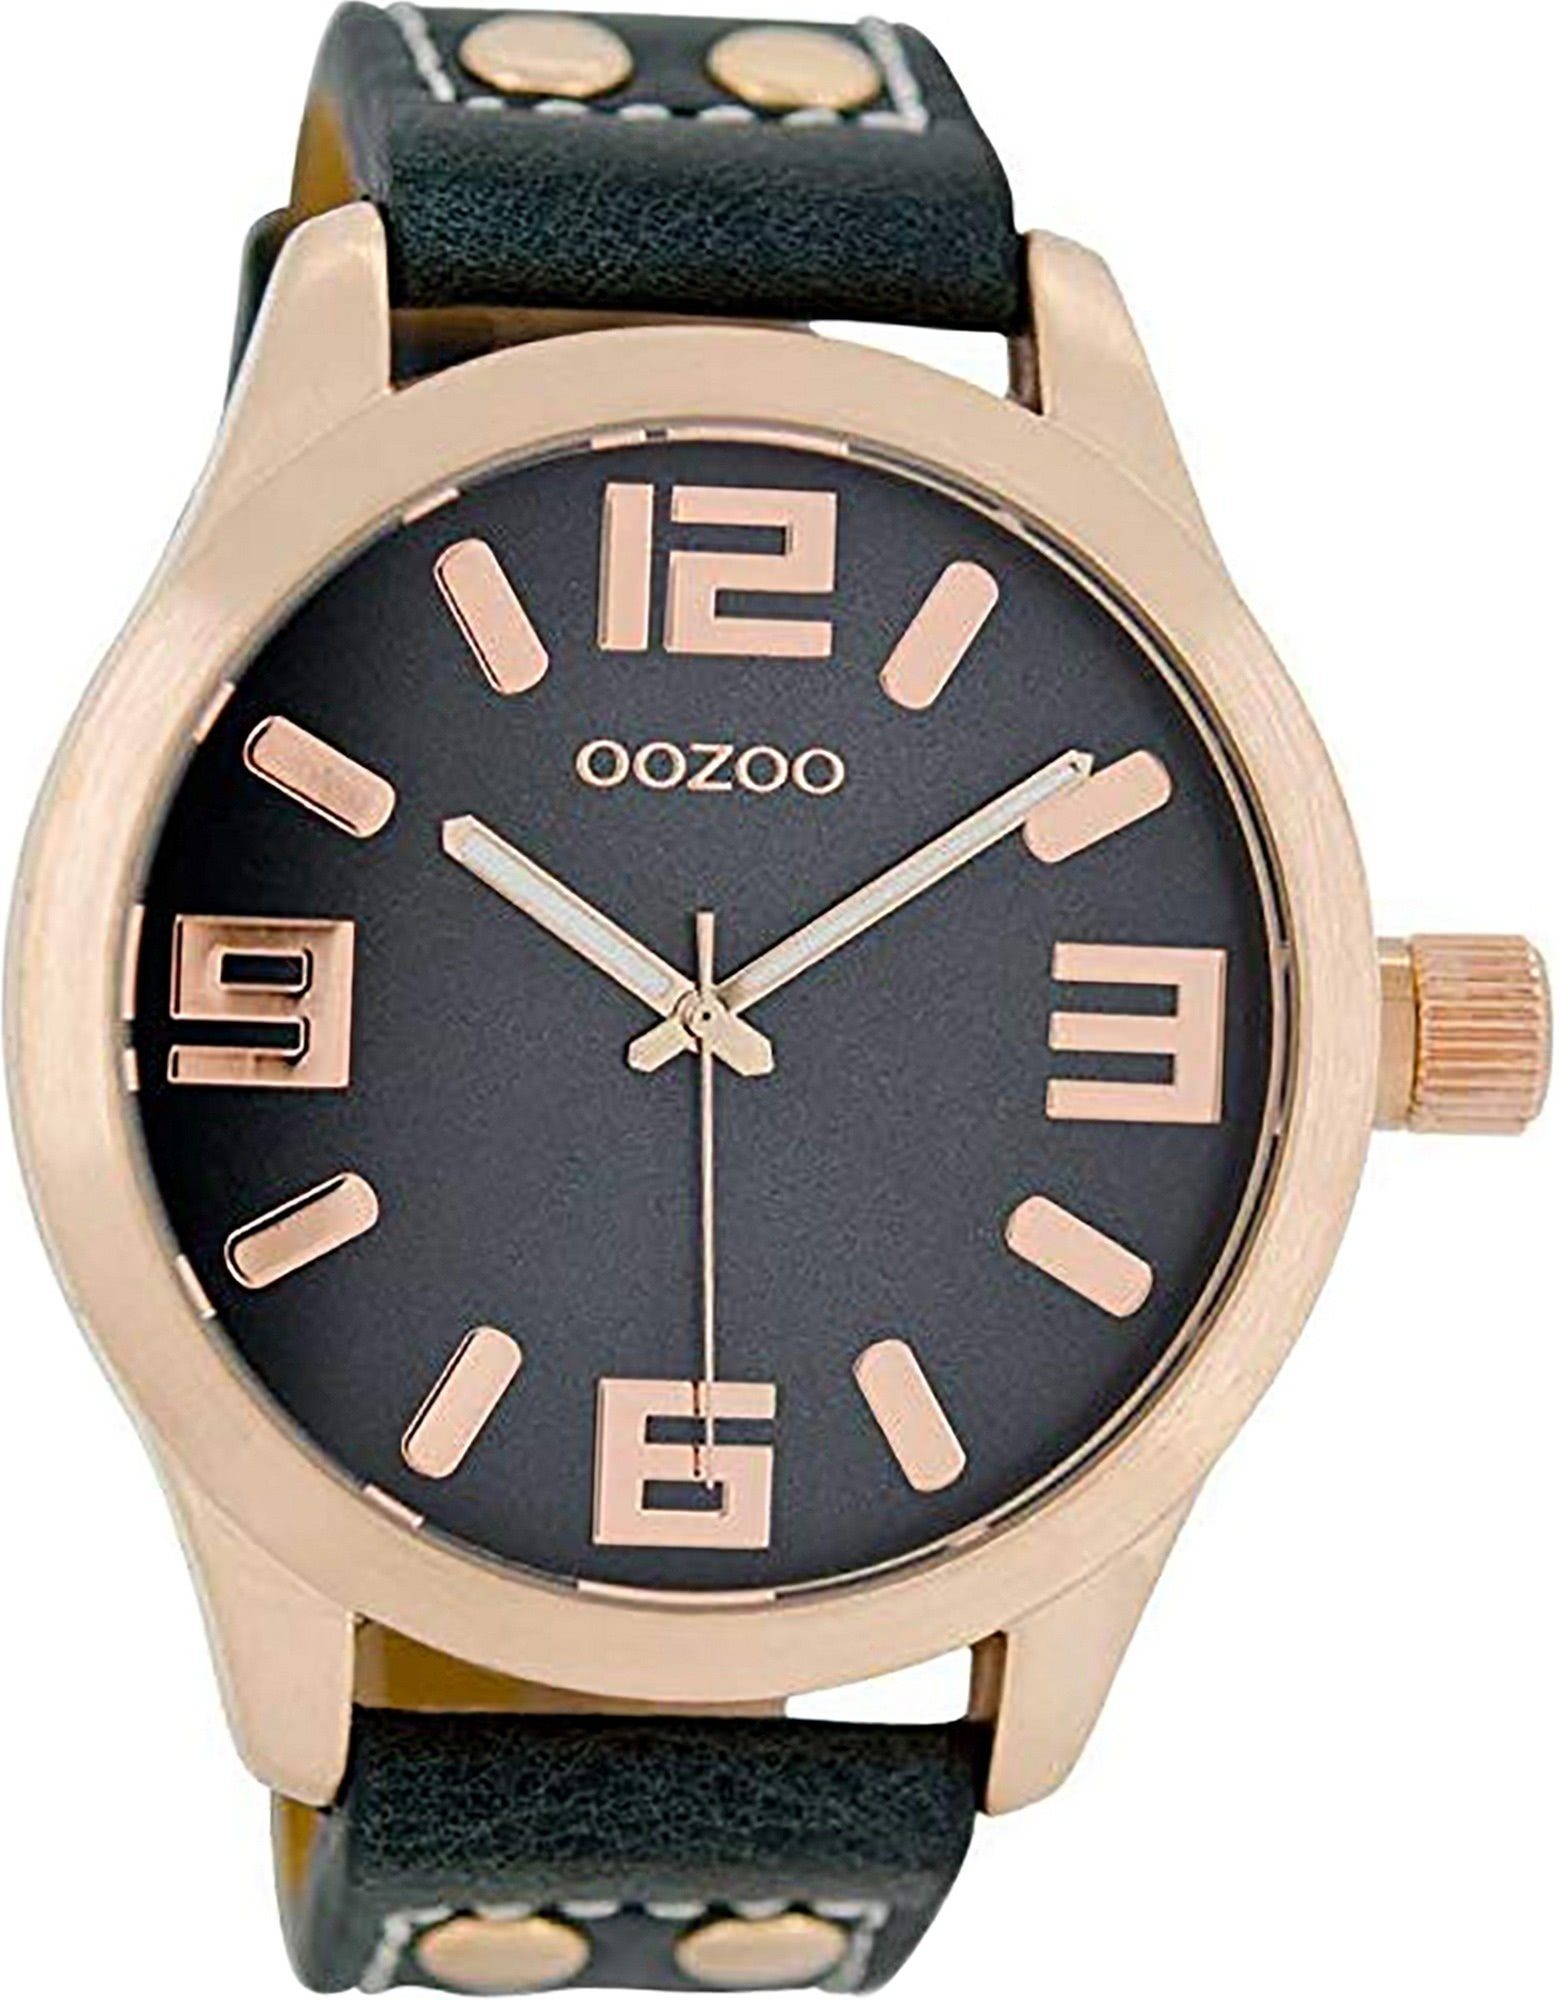 OOZOO Quarzuhr Oozoo Leder Damen Uhr C1157 Analog, Damenuhr Lederarmband dunkelblau, rundes Gehäuse, extra groß (ca 46mm)